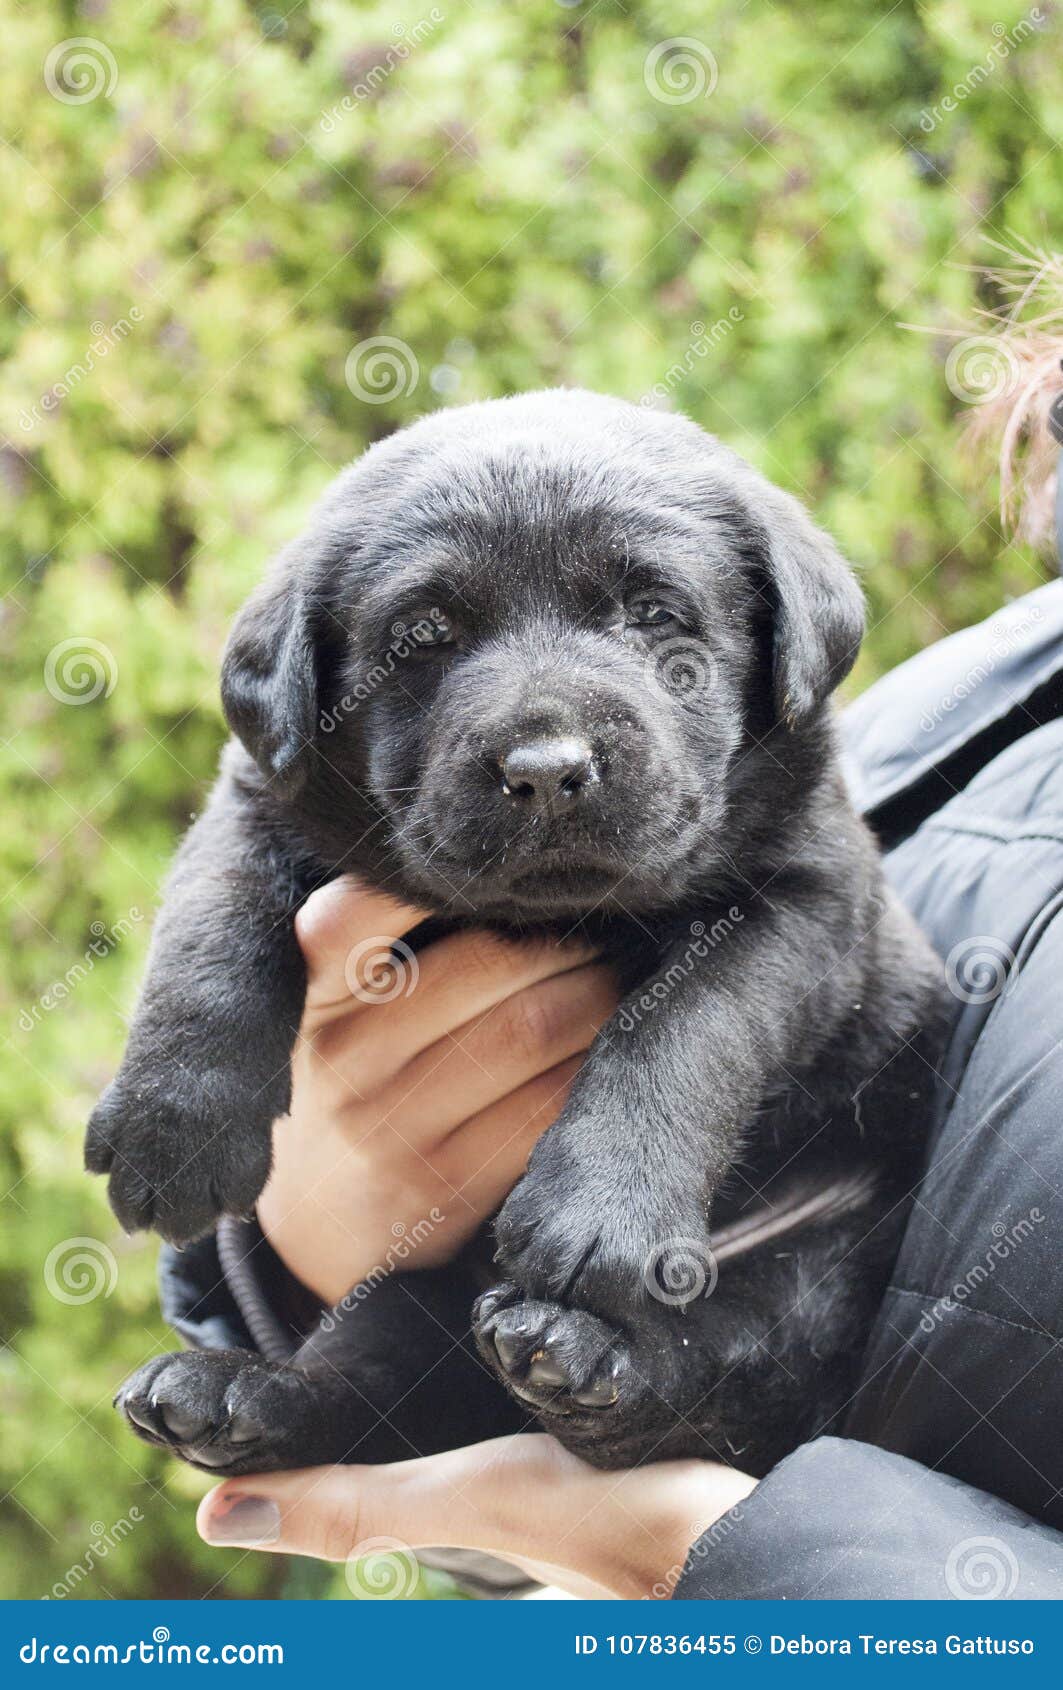 Doornen Absorberen Cornwall Zwart Labrador puppy stock afbeelding. Image of aandachtig - 107836455